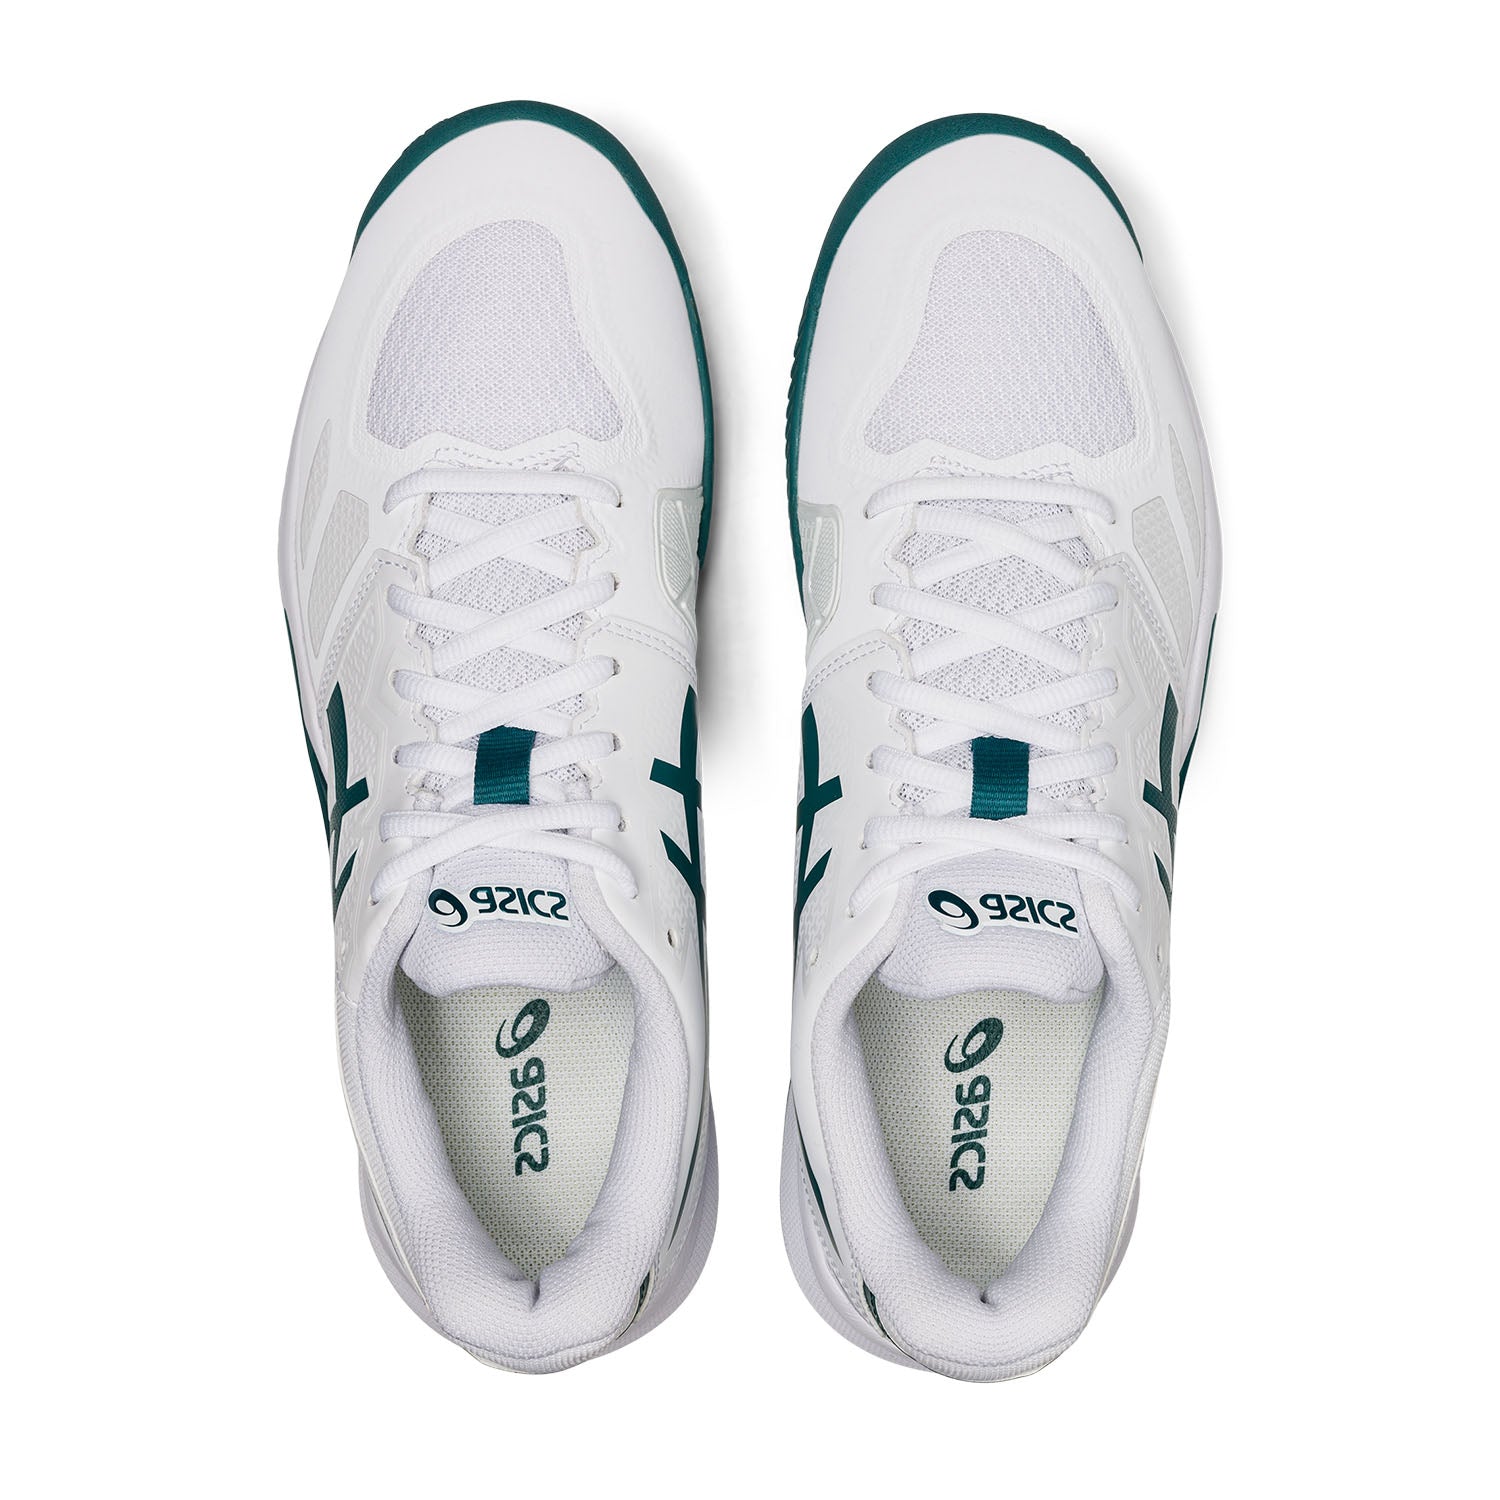 Asics Gel-Challenger 13 Clay Mens Tennis Shoes - White/Velvet Pine-Bruntsfield Sports Online